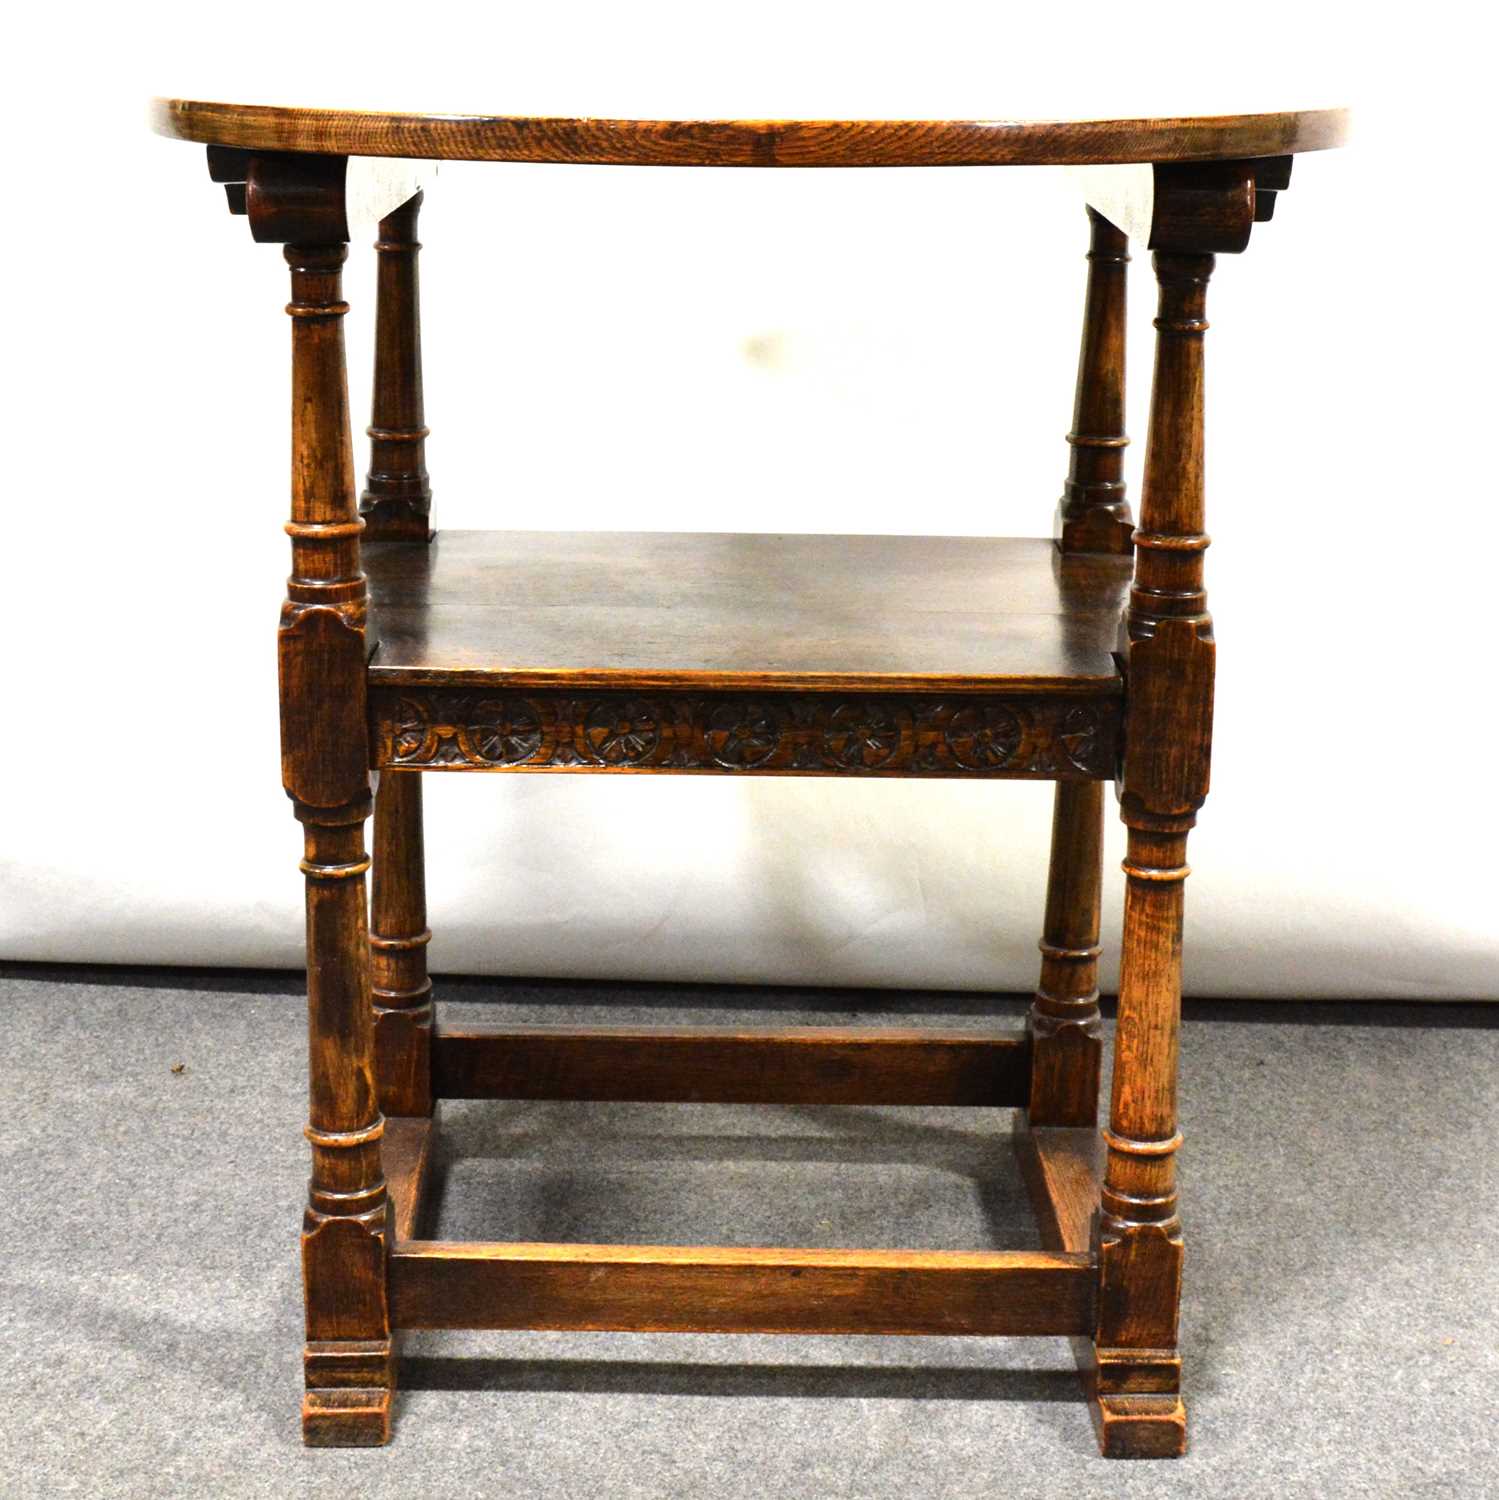 Oak monk's seat, - Image 2 of 2